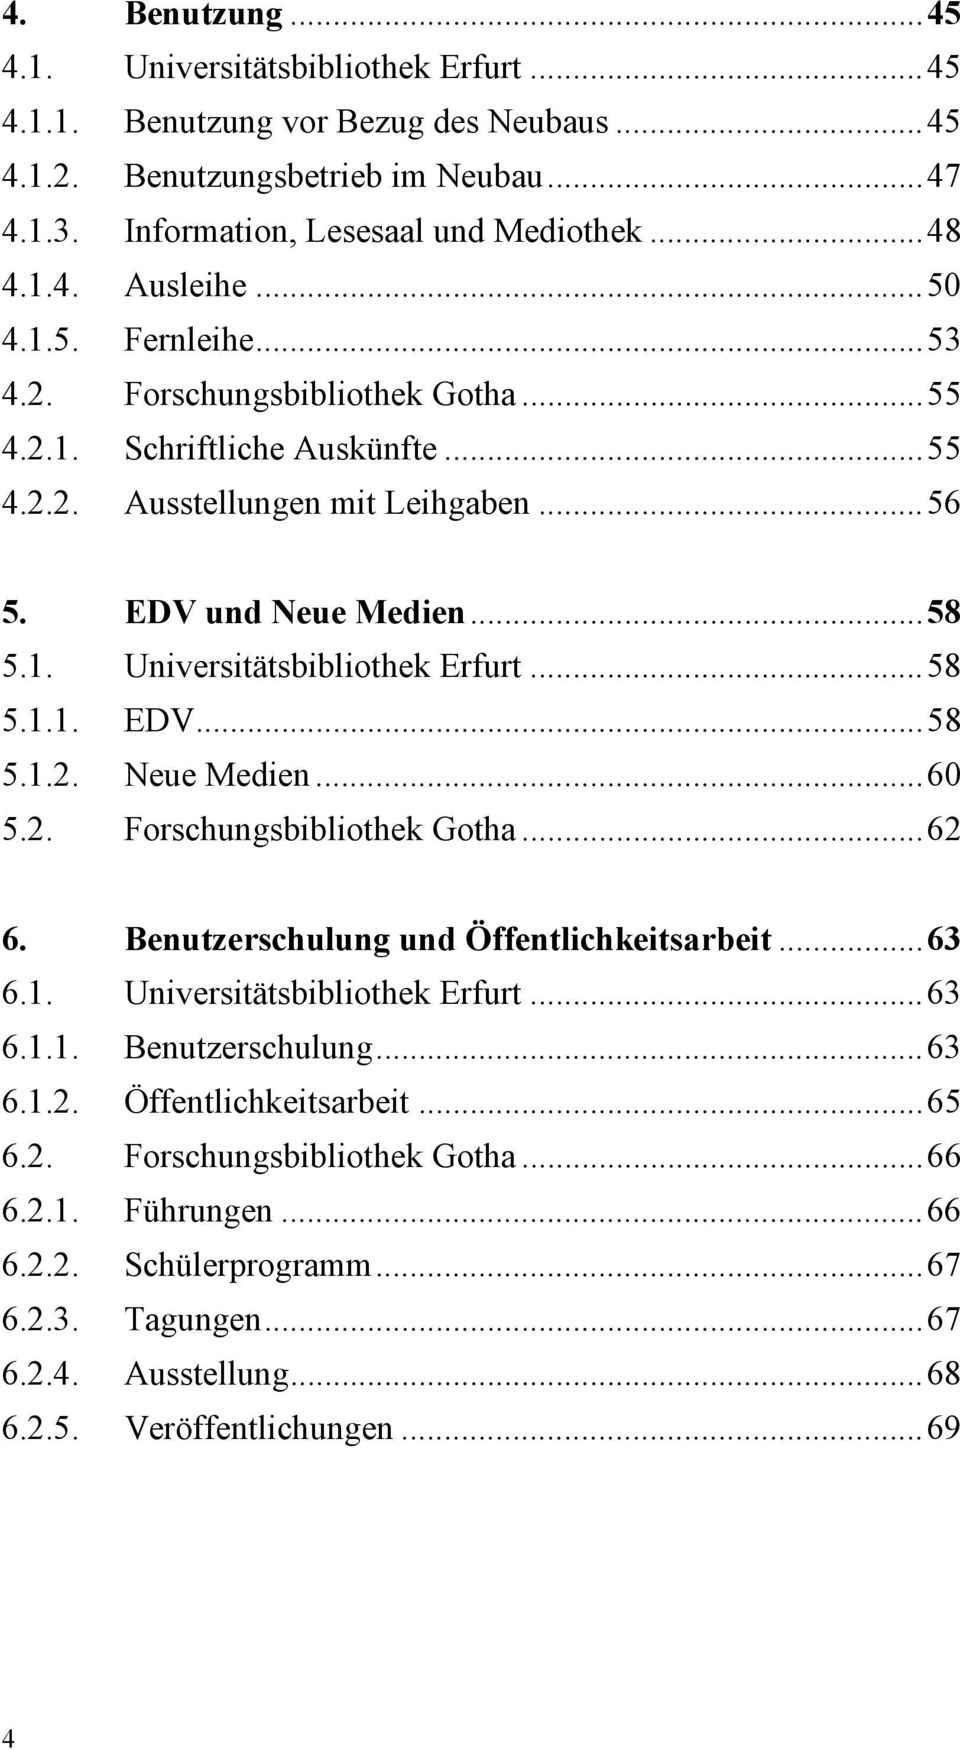 ..58 5.1.1. EDV...58 5.1.2. Neue Medien...60 5.2. Forschungsbibliothek Gotha...62 6. Benutzerschulung und Öffentlichkeitsarbeit...63 6.1. Universitätsbibliothek Erfurt...63 6.1.1. Benutzerschulung...63 6.1.2. Öffentlichkeitsarbeit...65 6.